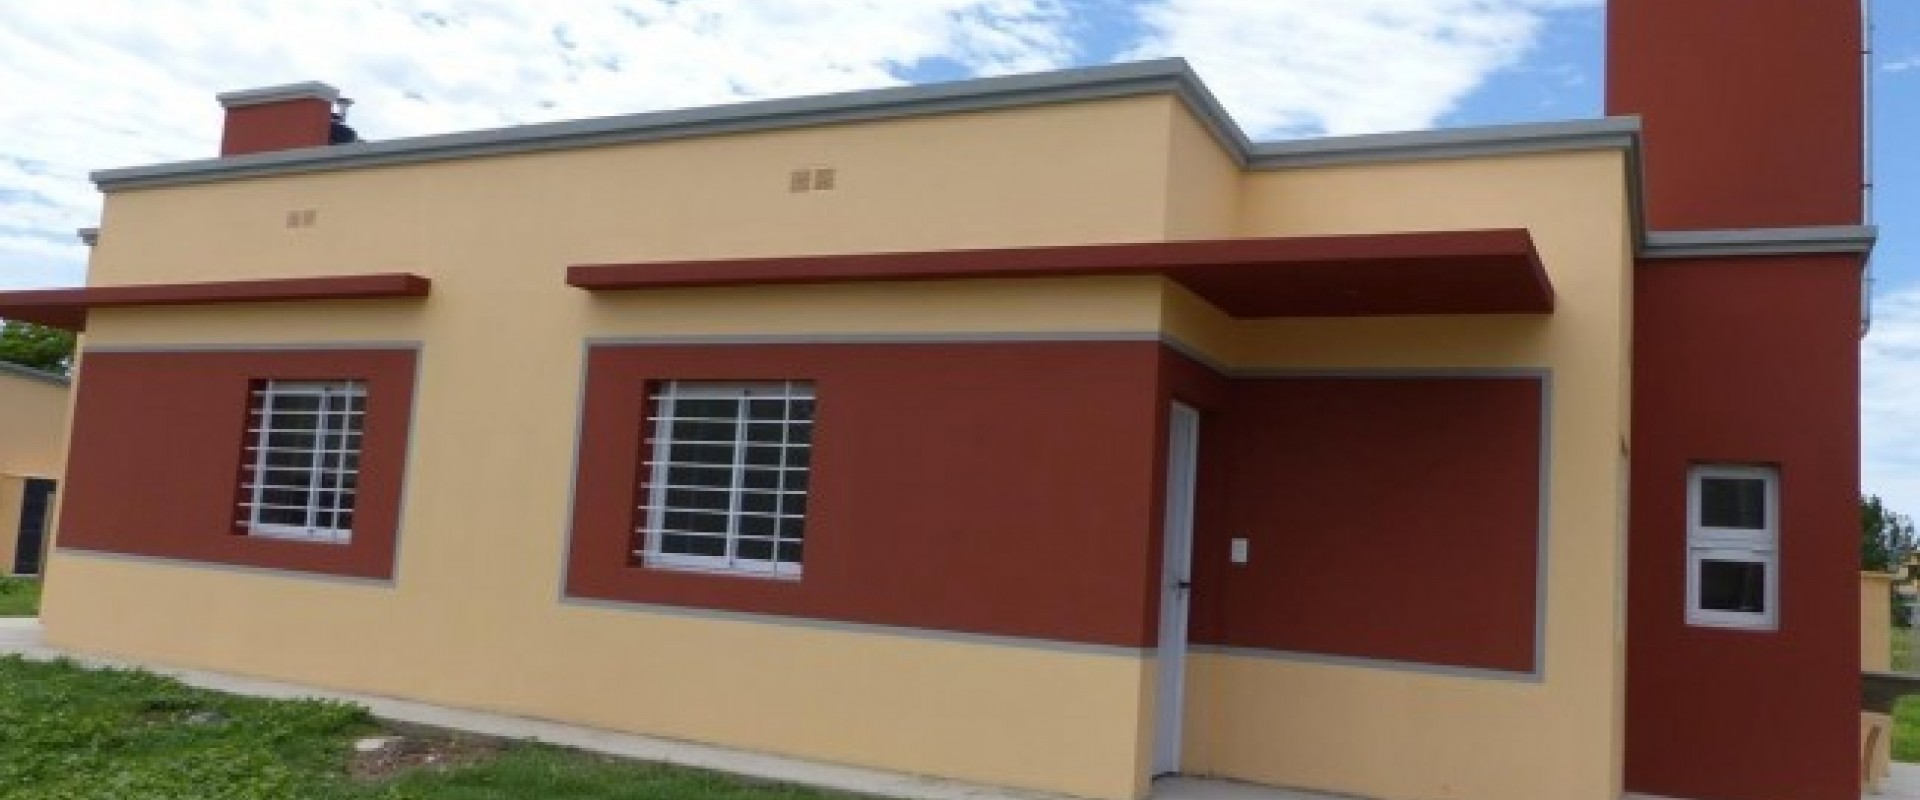 Resultado del sorteo de pre-adjudicatarios de Concepción del Uruguay 350 viviendas